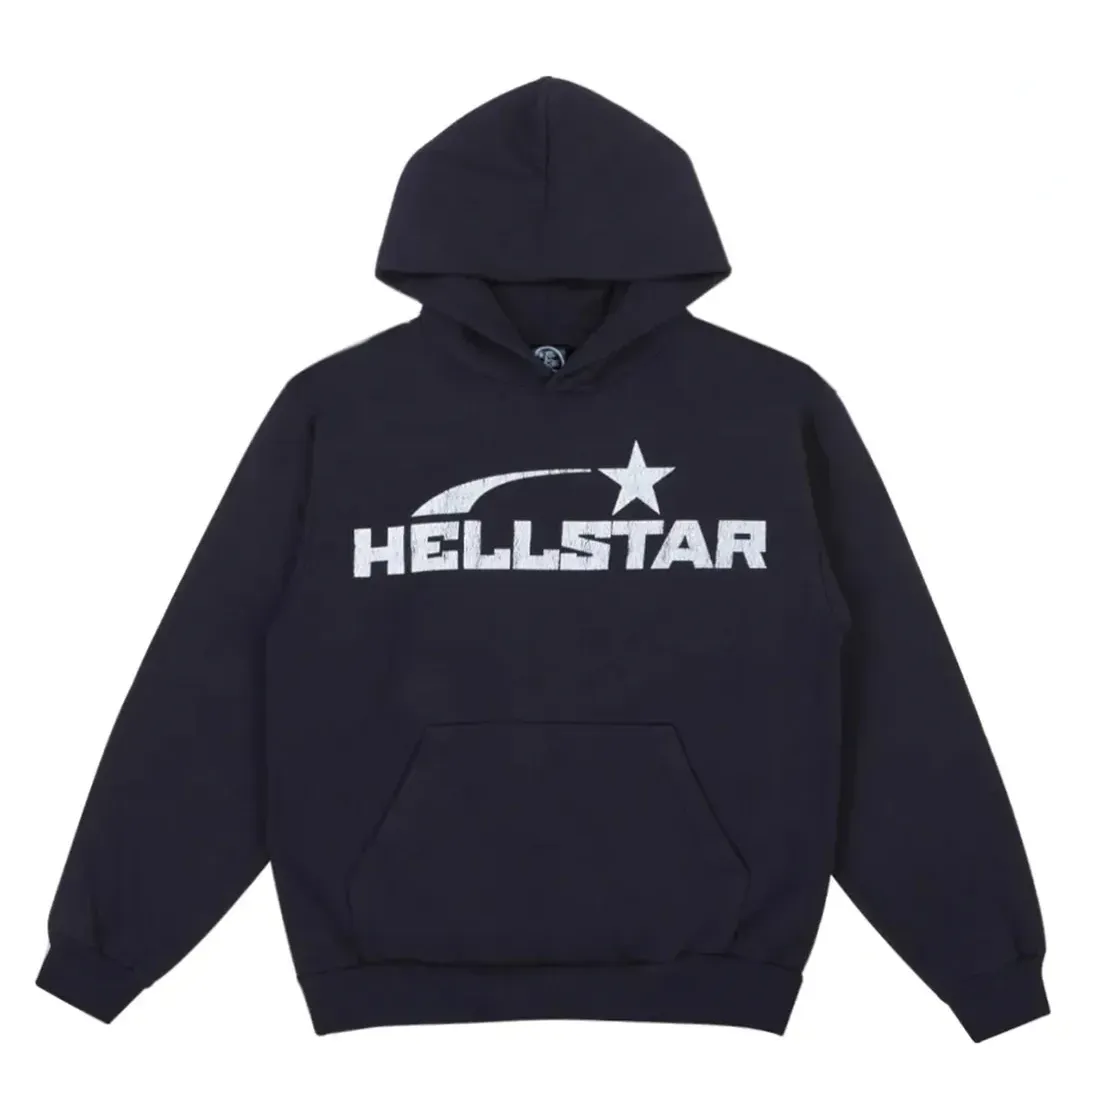 Hell Star hoodie